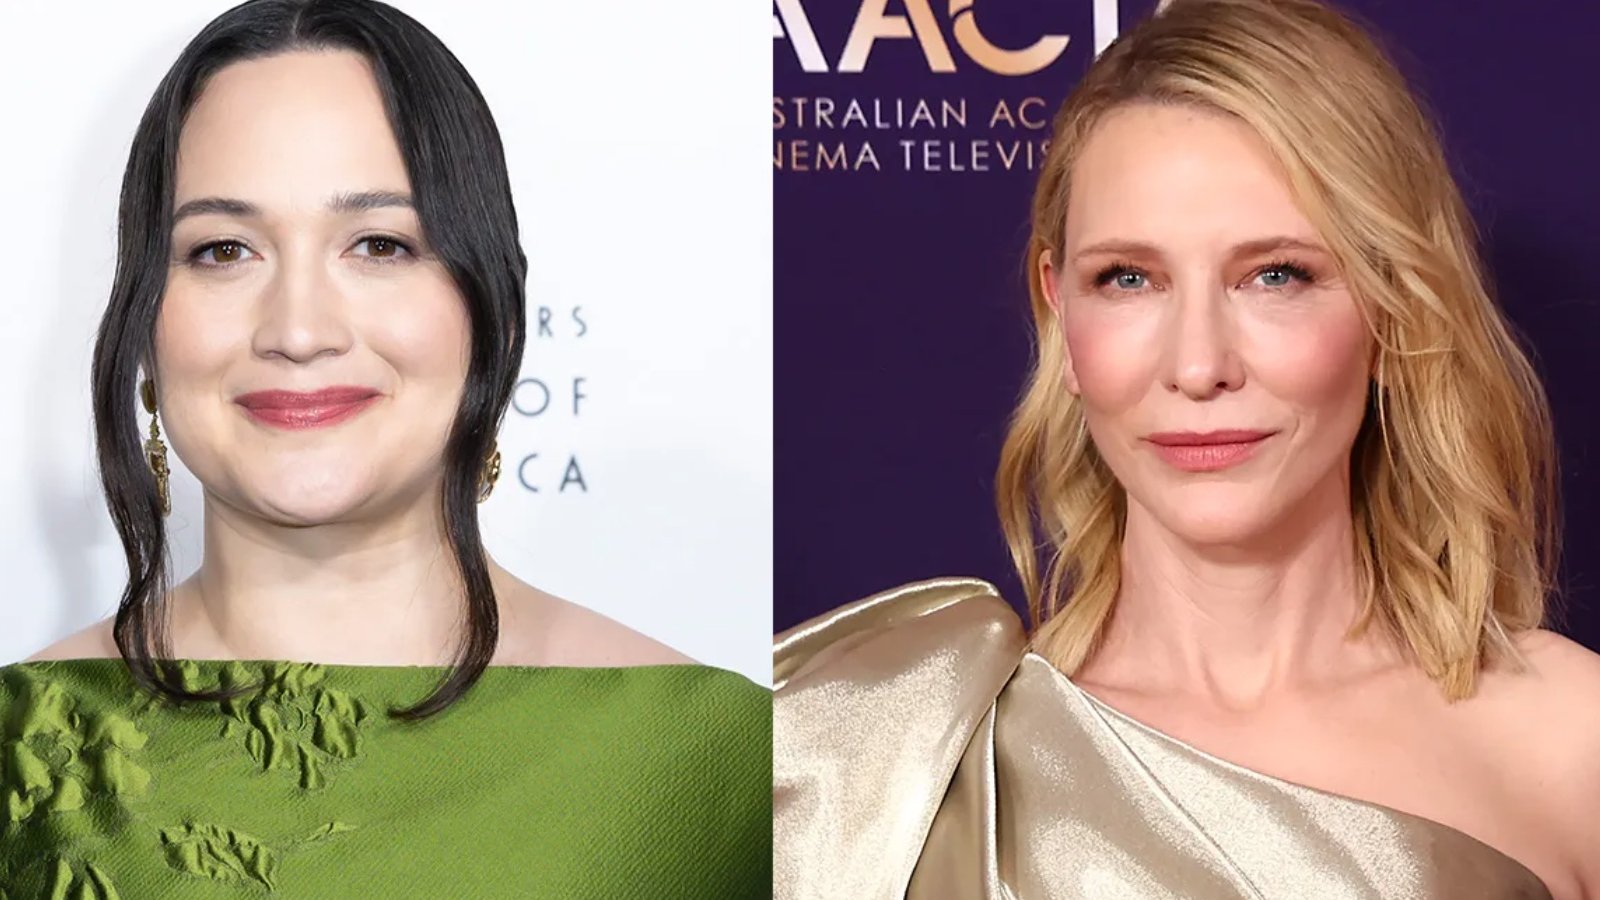 Lily Gladstone ricorda la sconfitta di Cate Blanchett agli Oscar: 'Mi arrabbiai moltissimo'